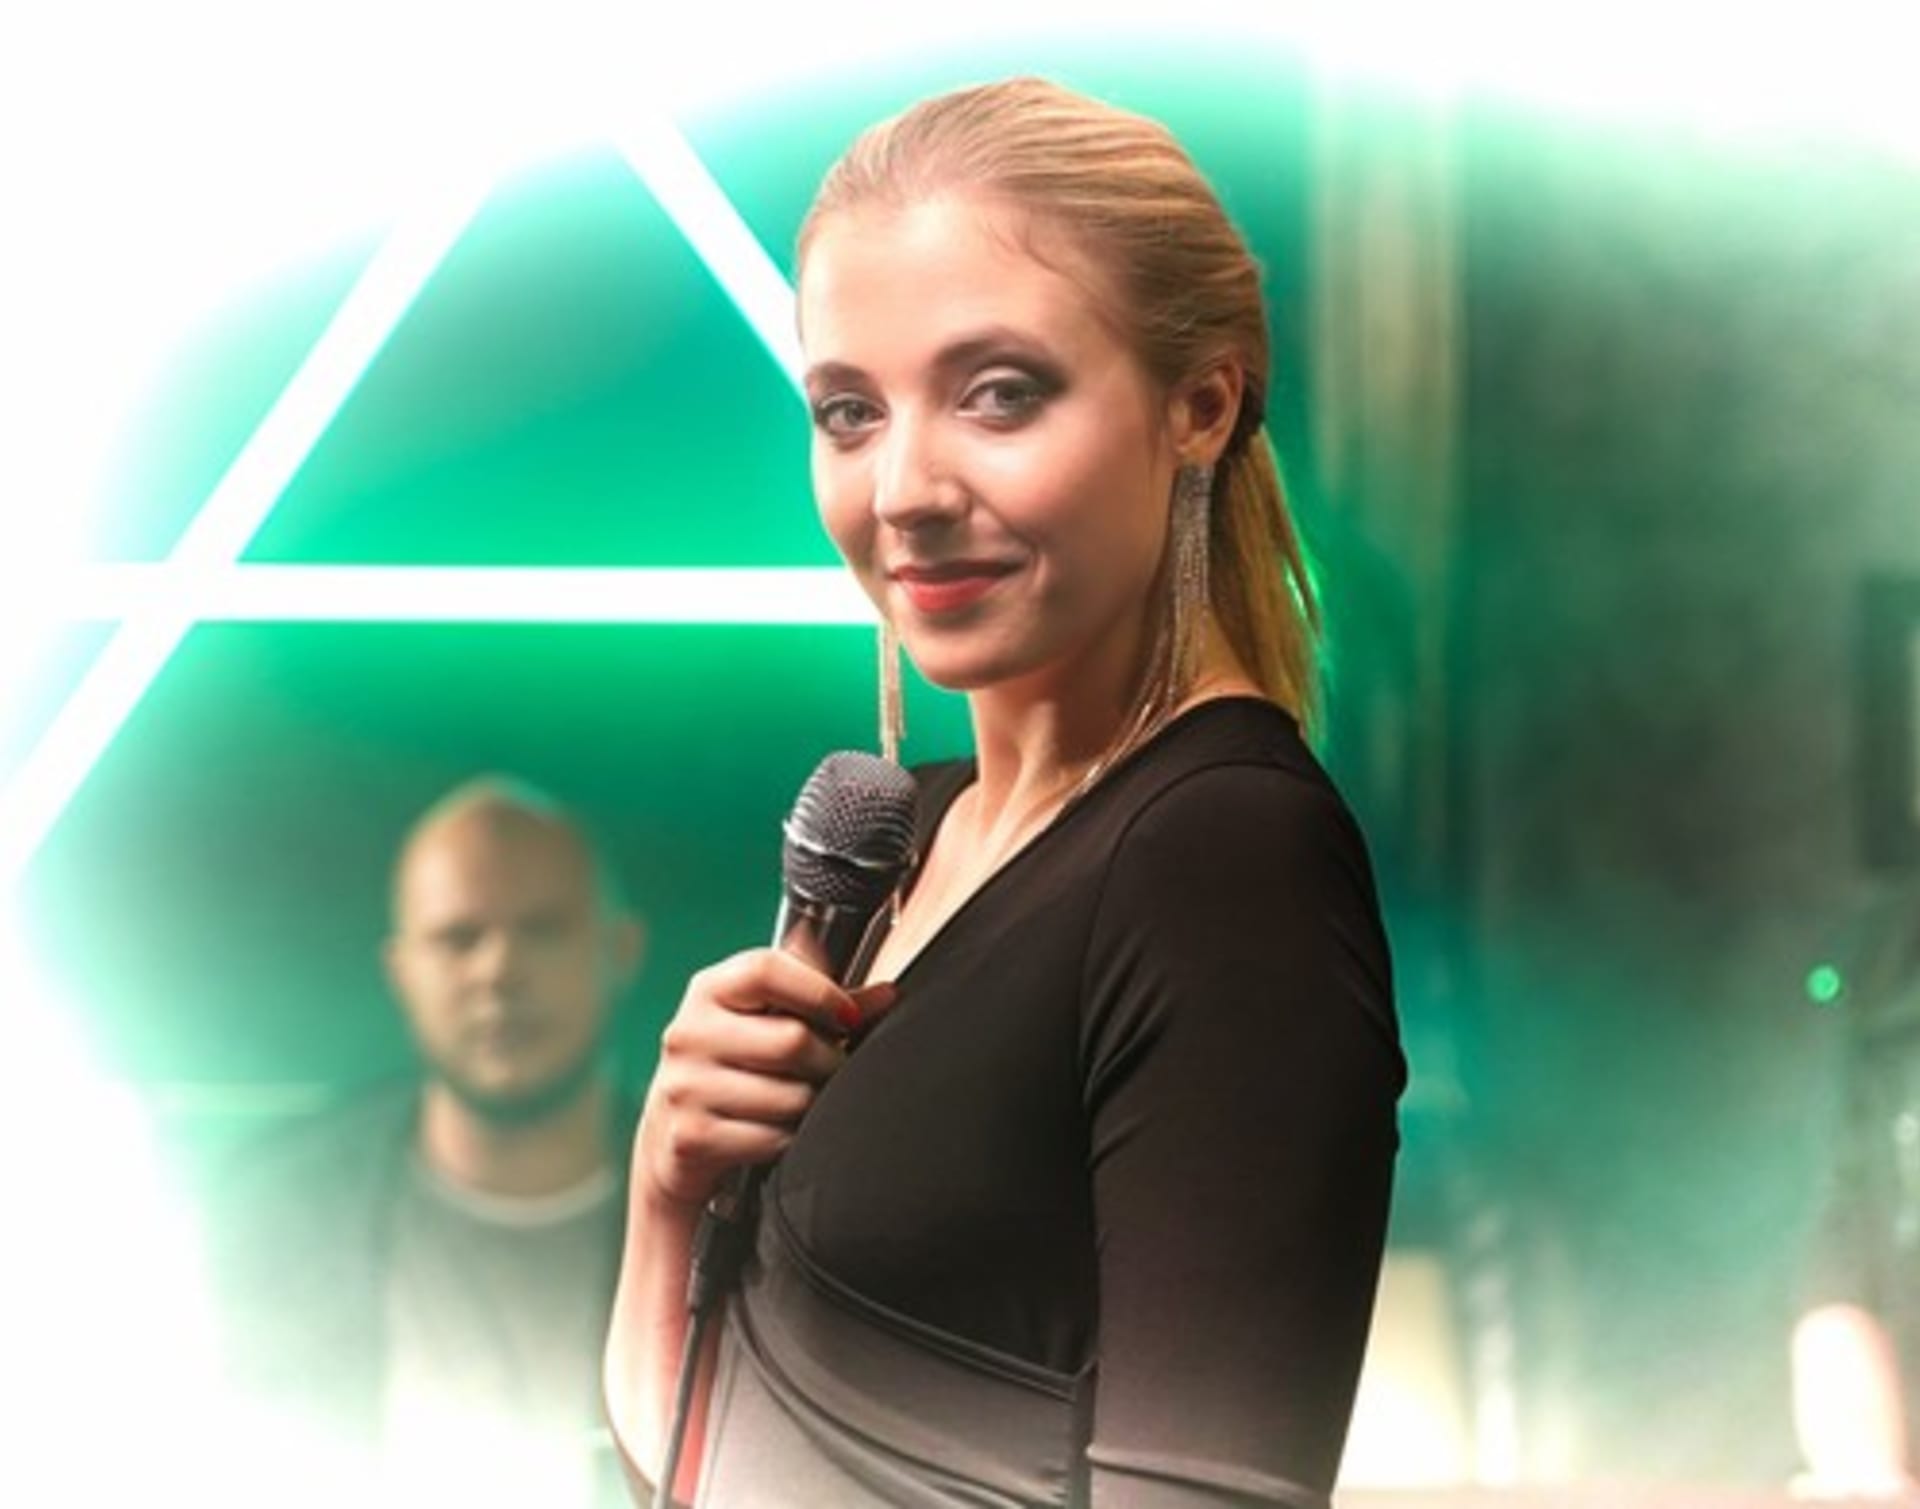 Anna Slováčková při natáčení videoklipu s názvem LEO v roce 2019